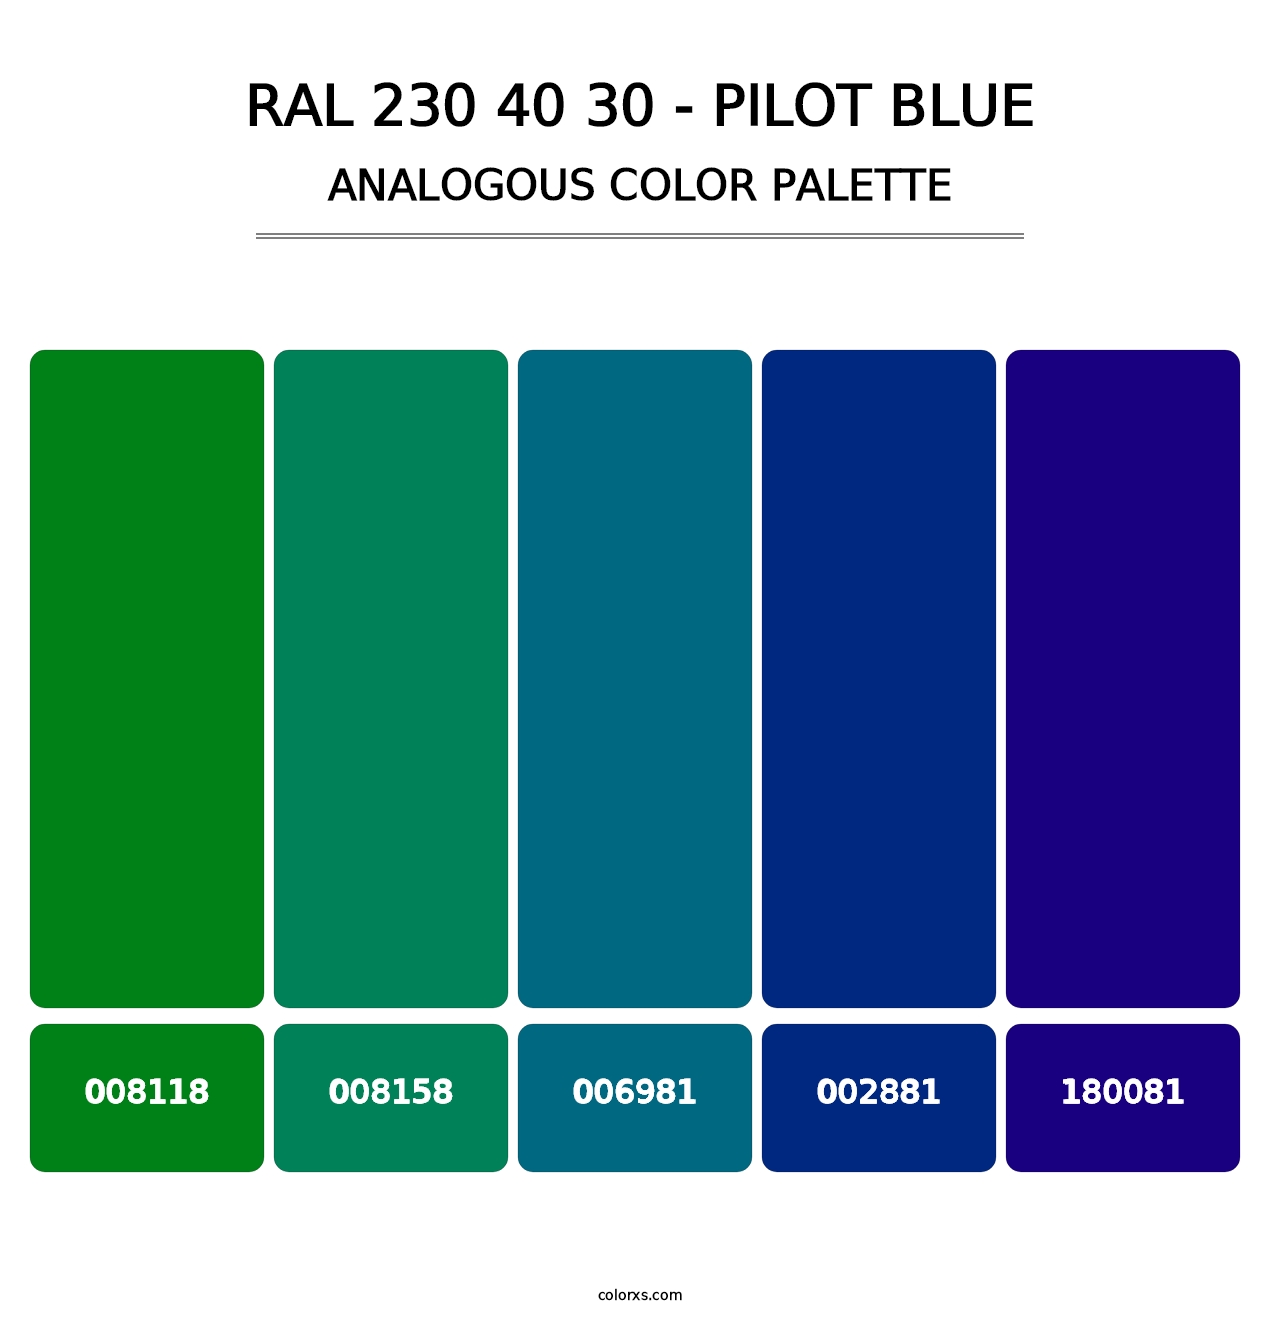 RAL 230 40 30 - Pilot Blue - Analogous Color Palette